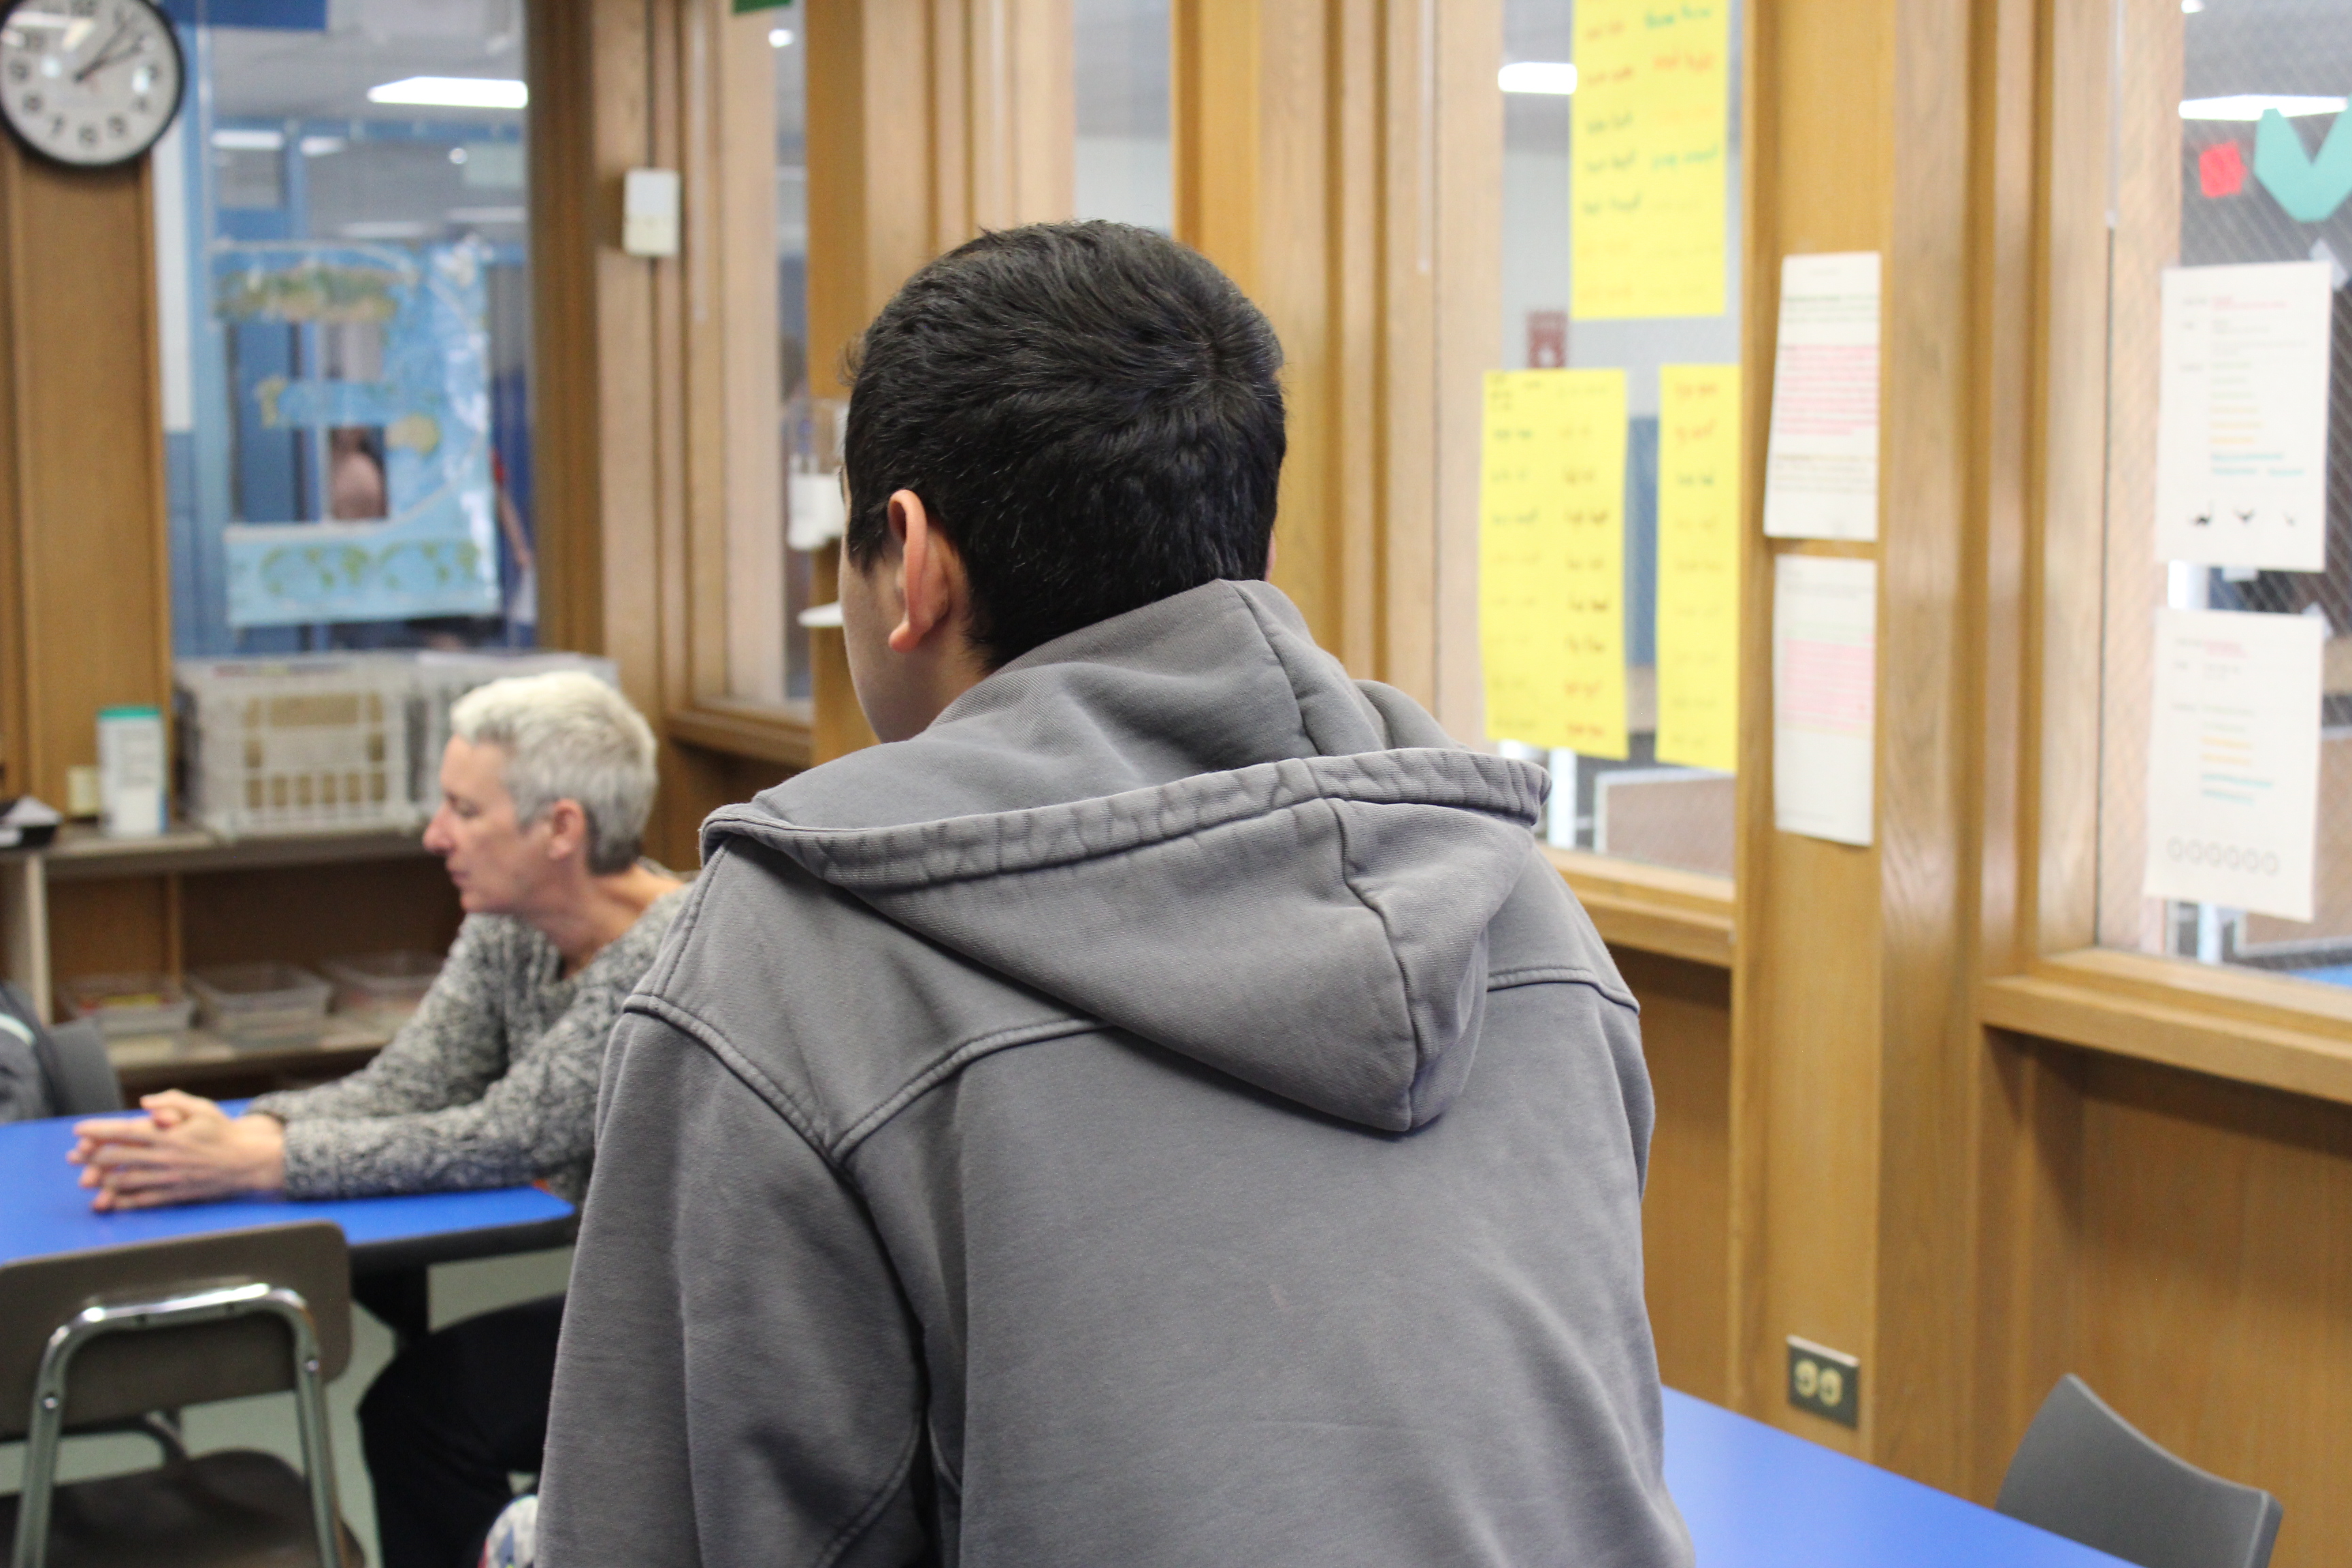 Aproximadamente el 11% de todos los estudiantes de las escuelas públicas de Rhode Island están clasificados como estudiantes multilingües. Estos estudiantes han estado entre los más afectados por las interrupciones de la pandemia.